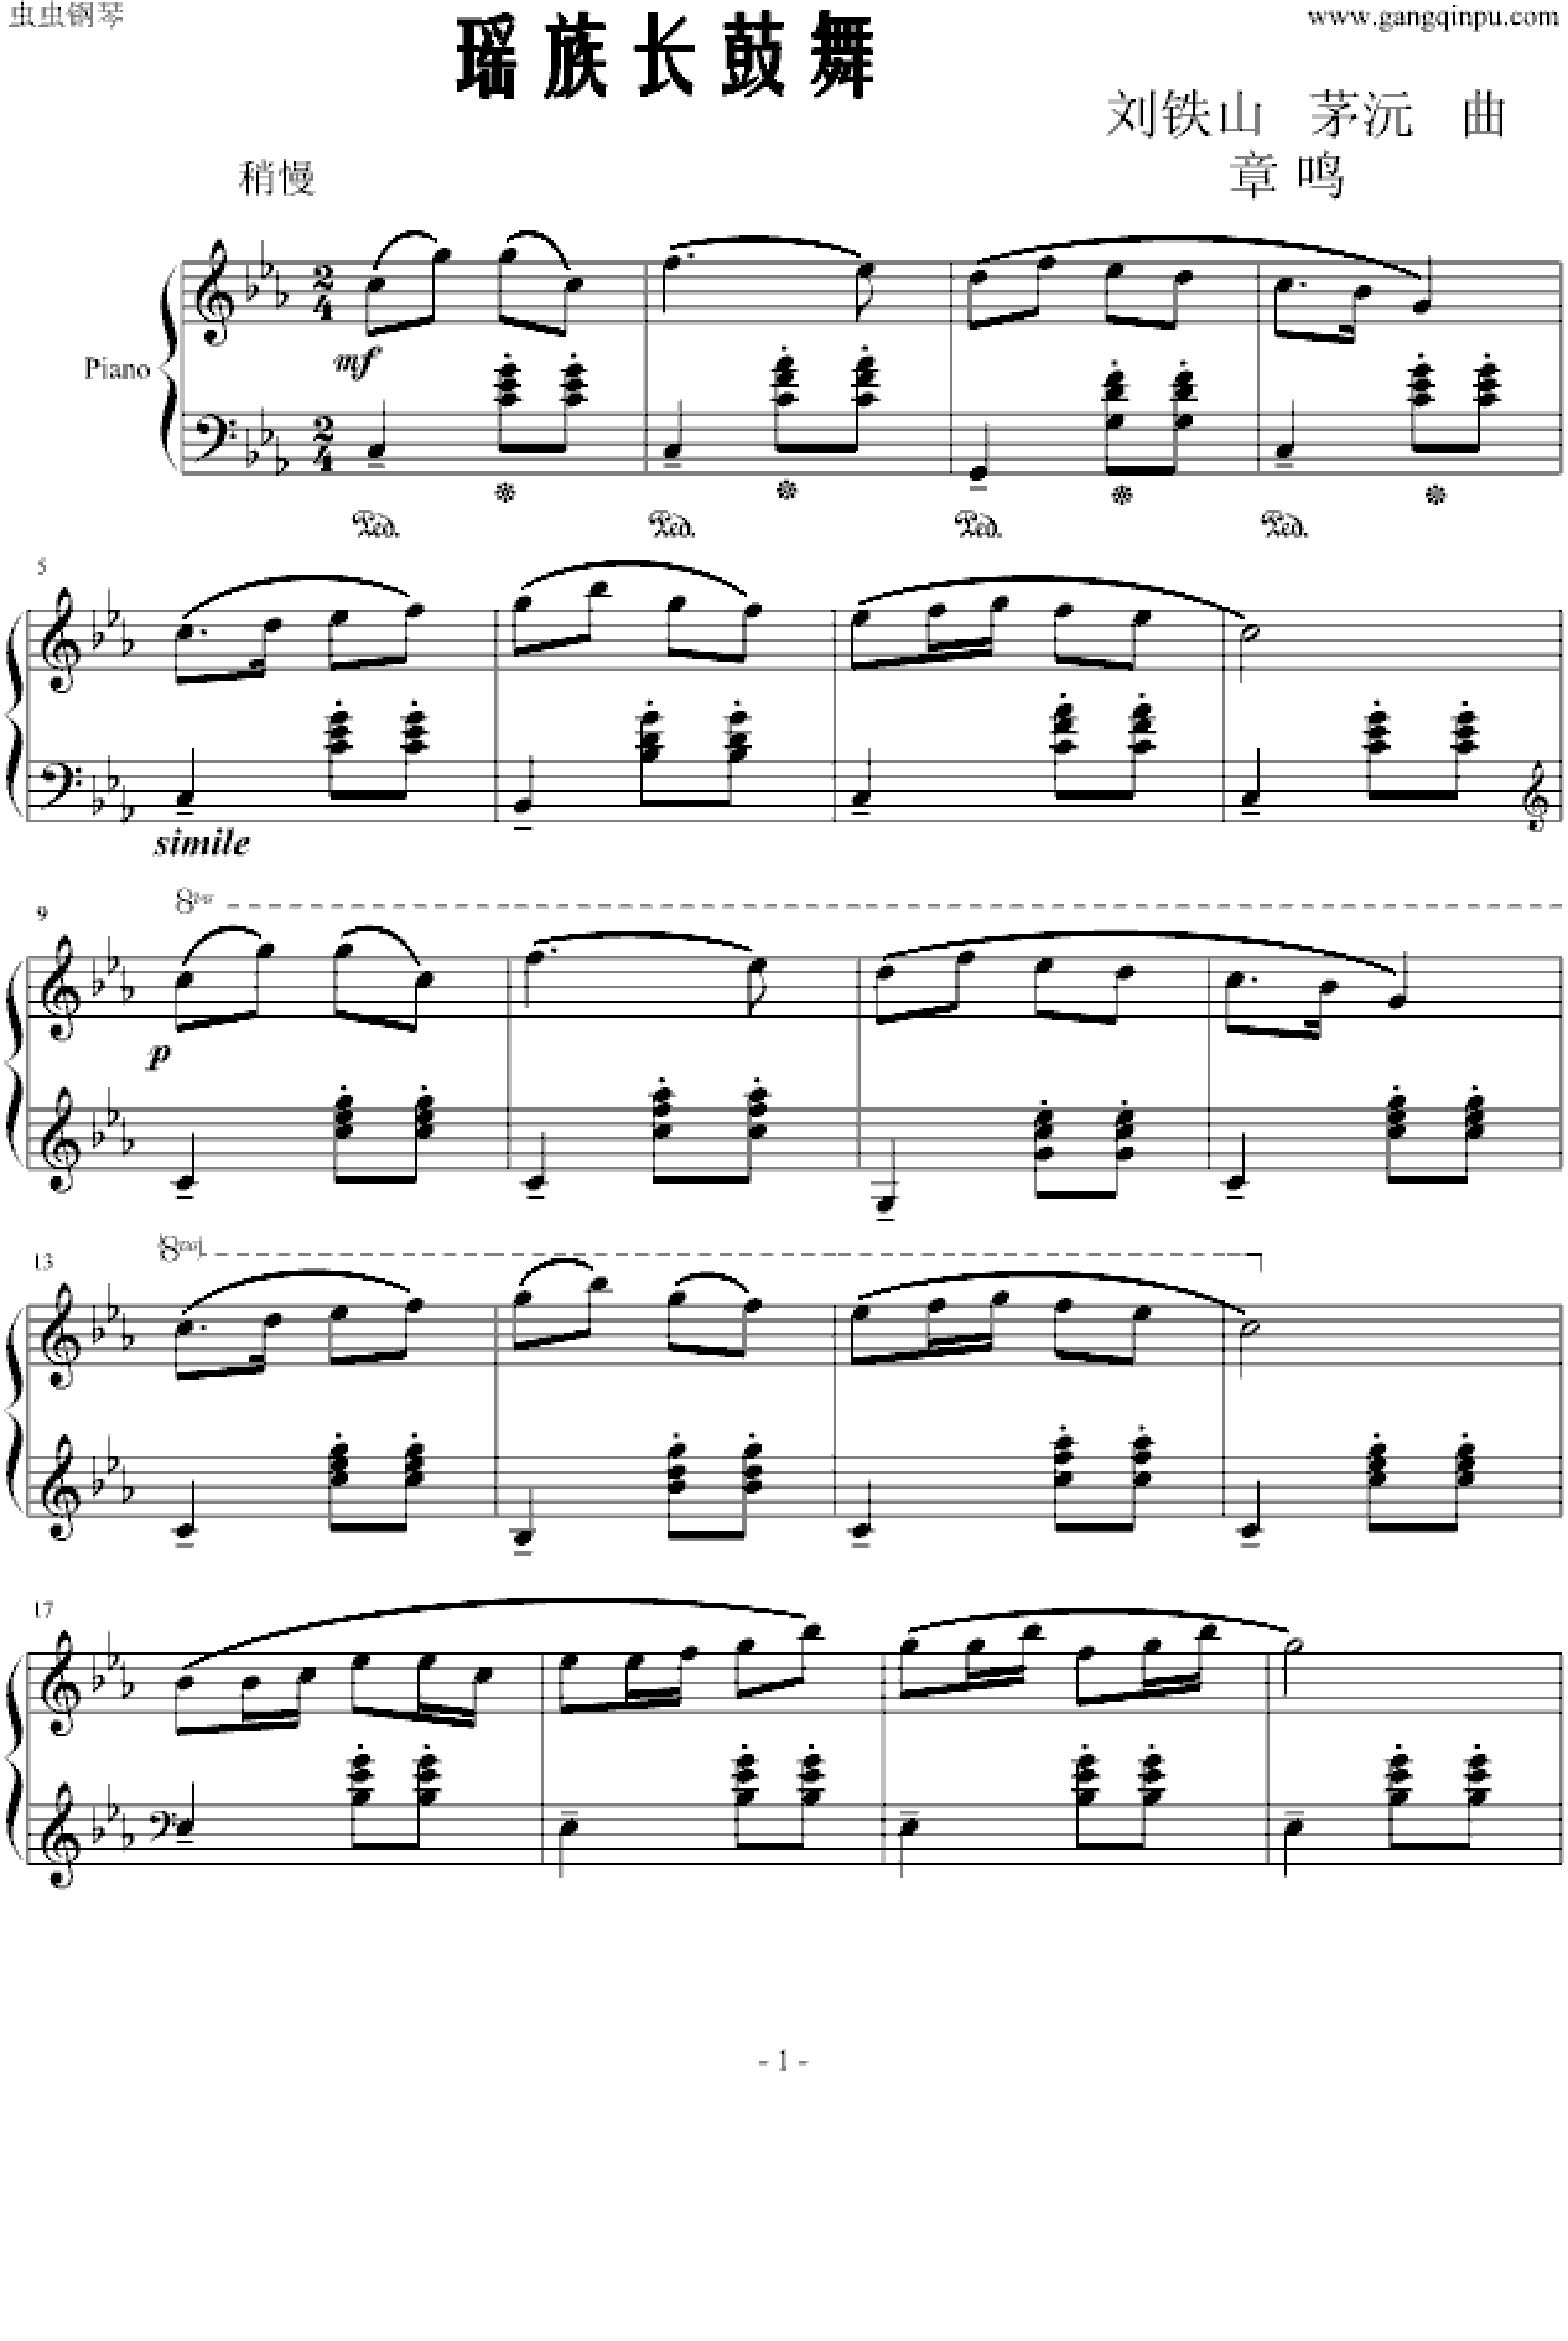 瑶族舞曲木管五重奏图片